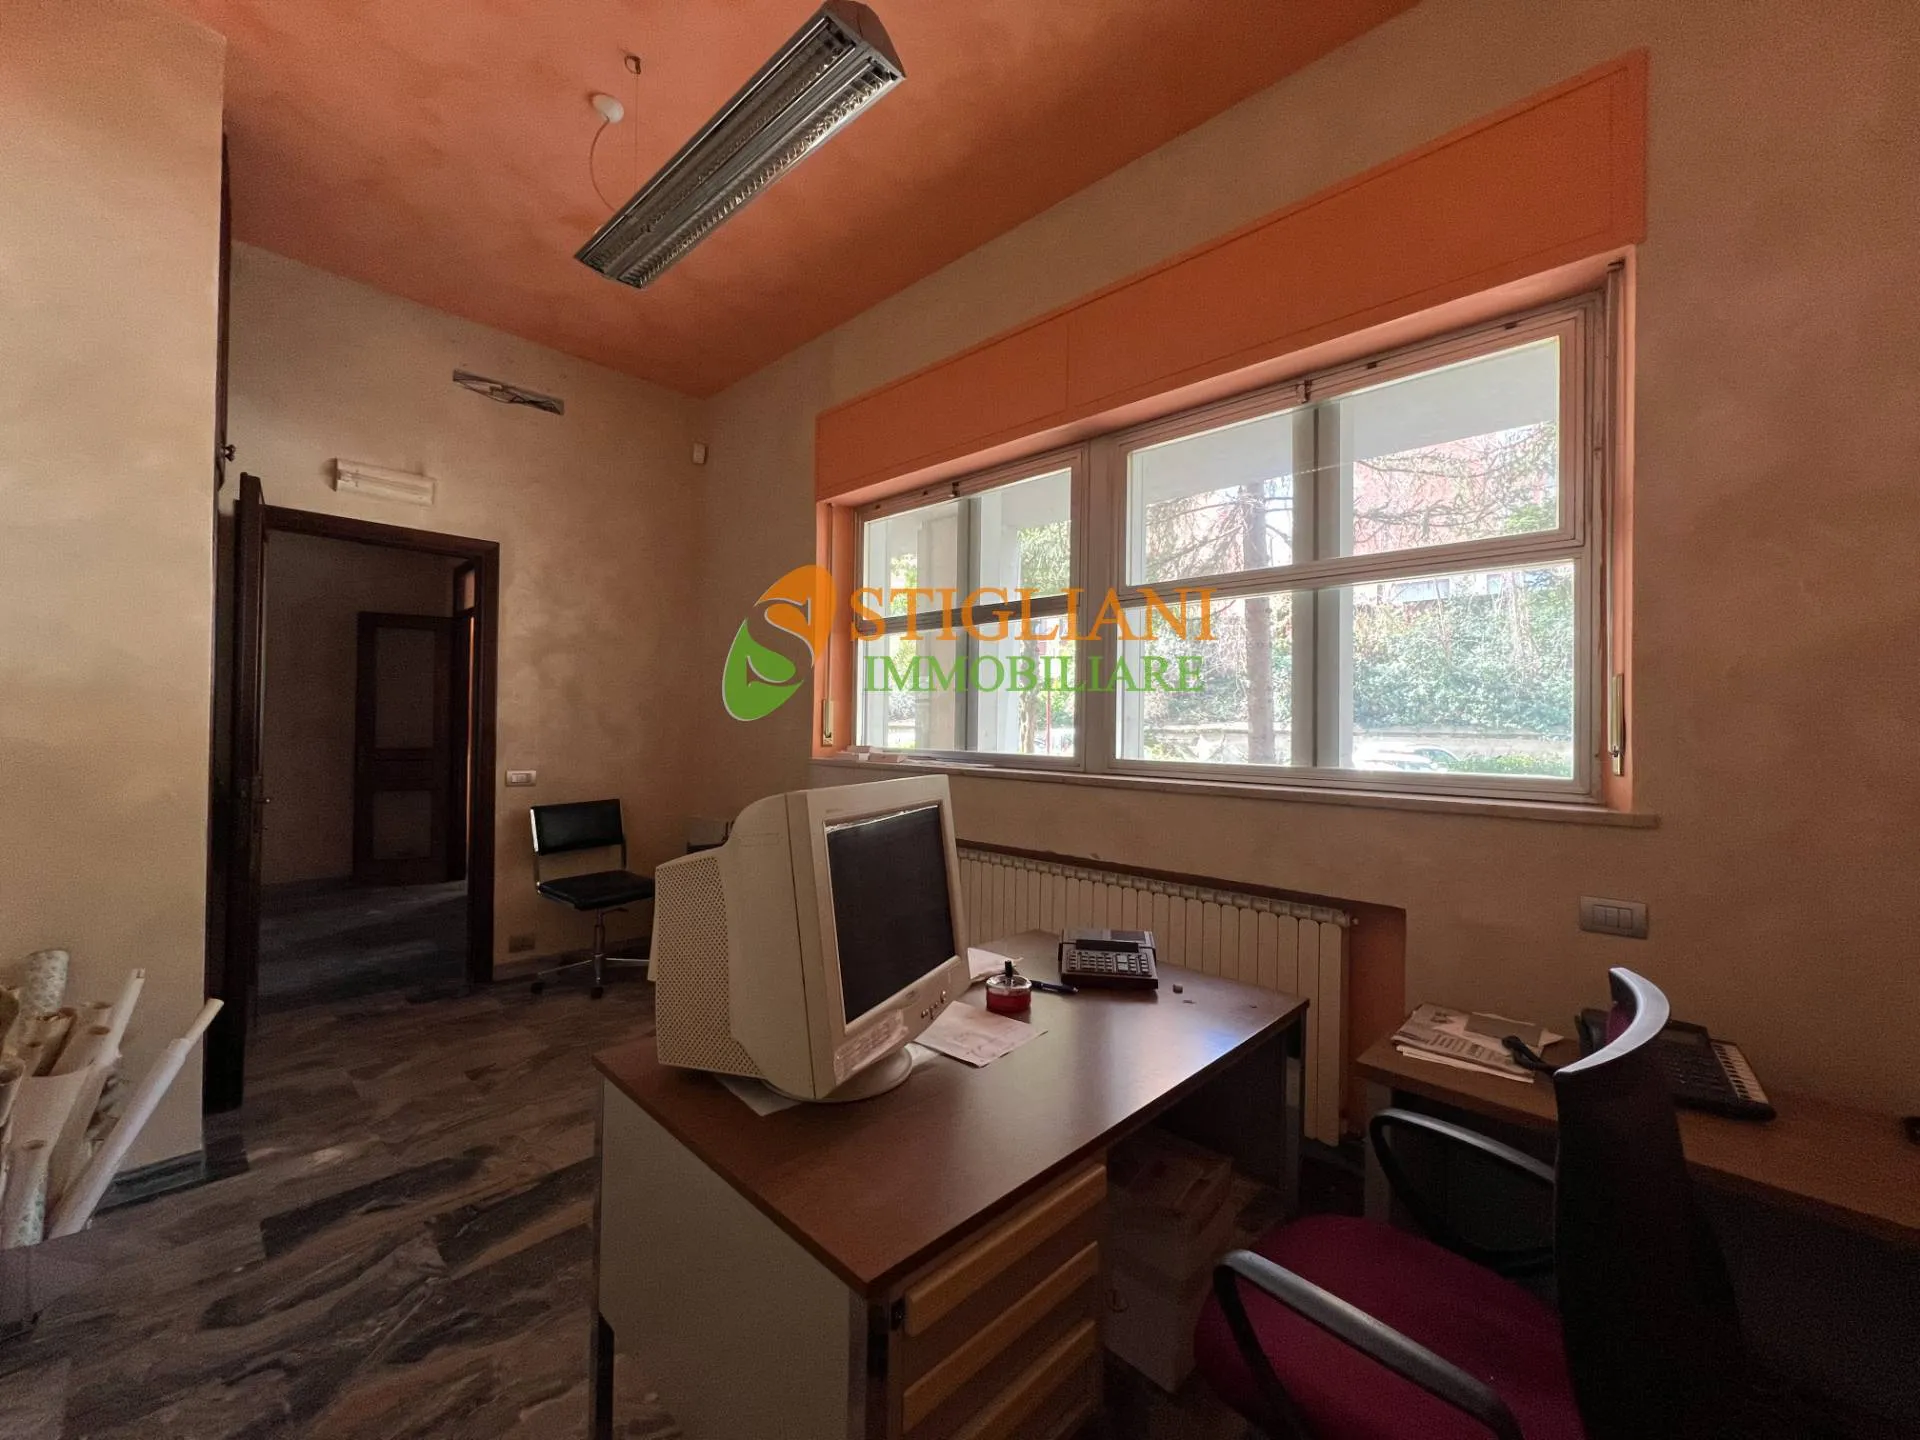 Immagine per Appartamento in vendita a Campobasso Zona via Monsignor Bologna